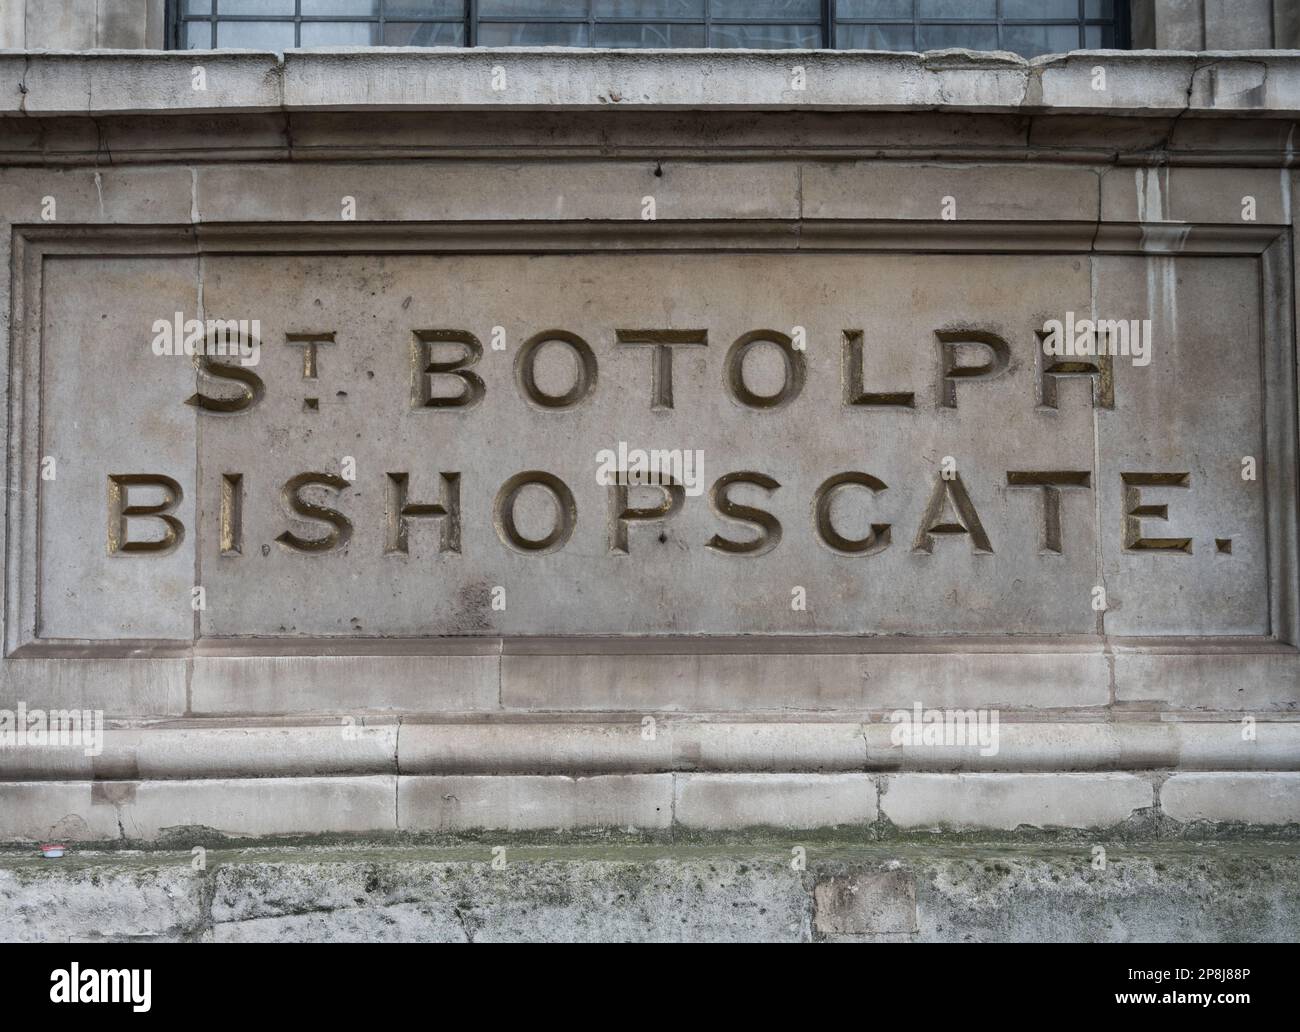 La pierre sculptée portant le nom de St Botolph Bishopsgate se trouve dans le mur avant de l'église St Botolph-Without-Bishopsgate. Londres, Angleterre, Royaume-Uni Banque D'Images